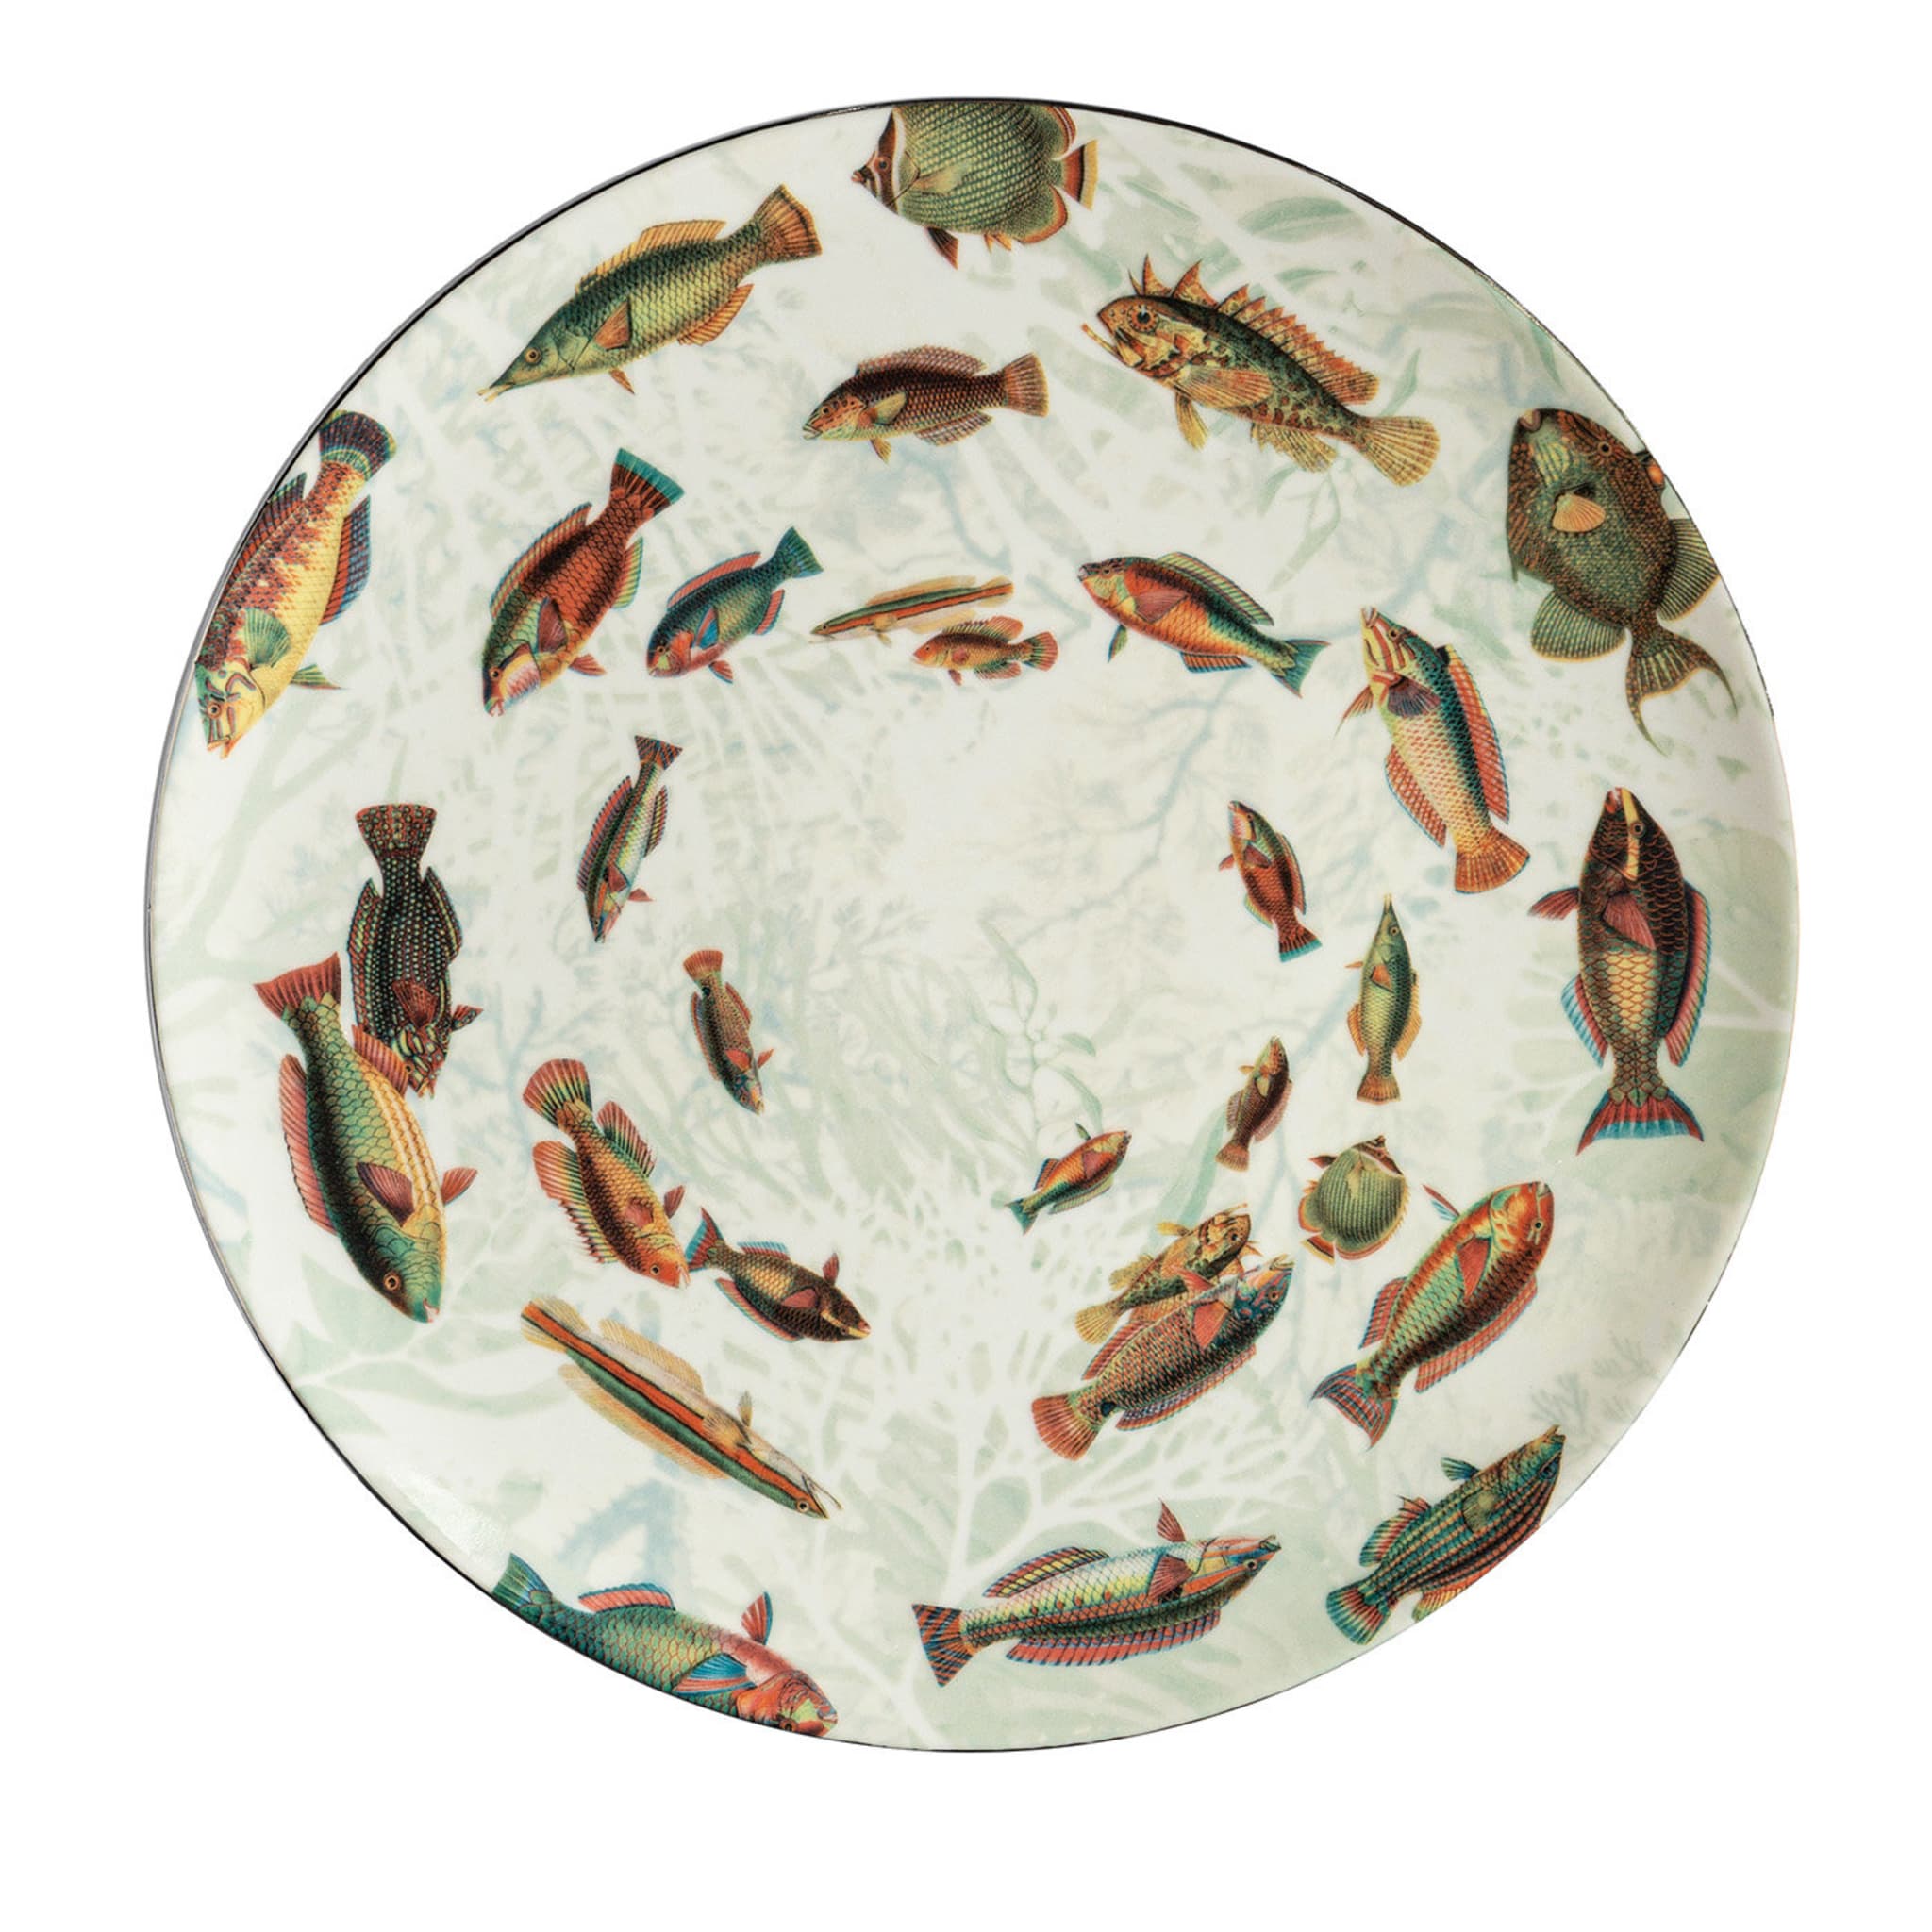 Plato llano con peces de colores de las Islas Amami - Vista principal